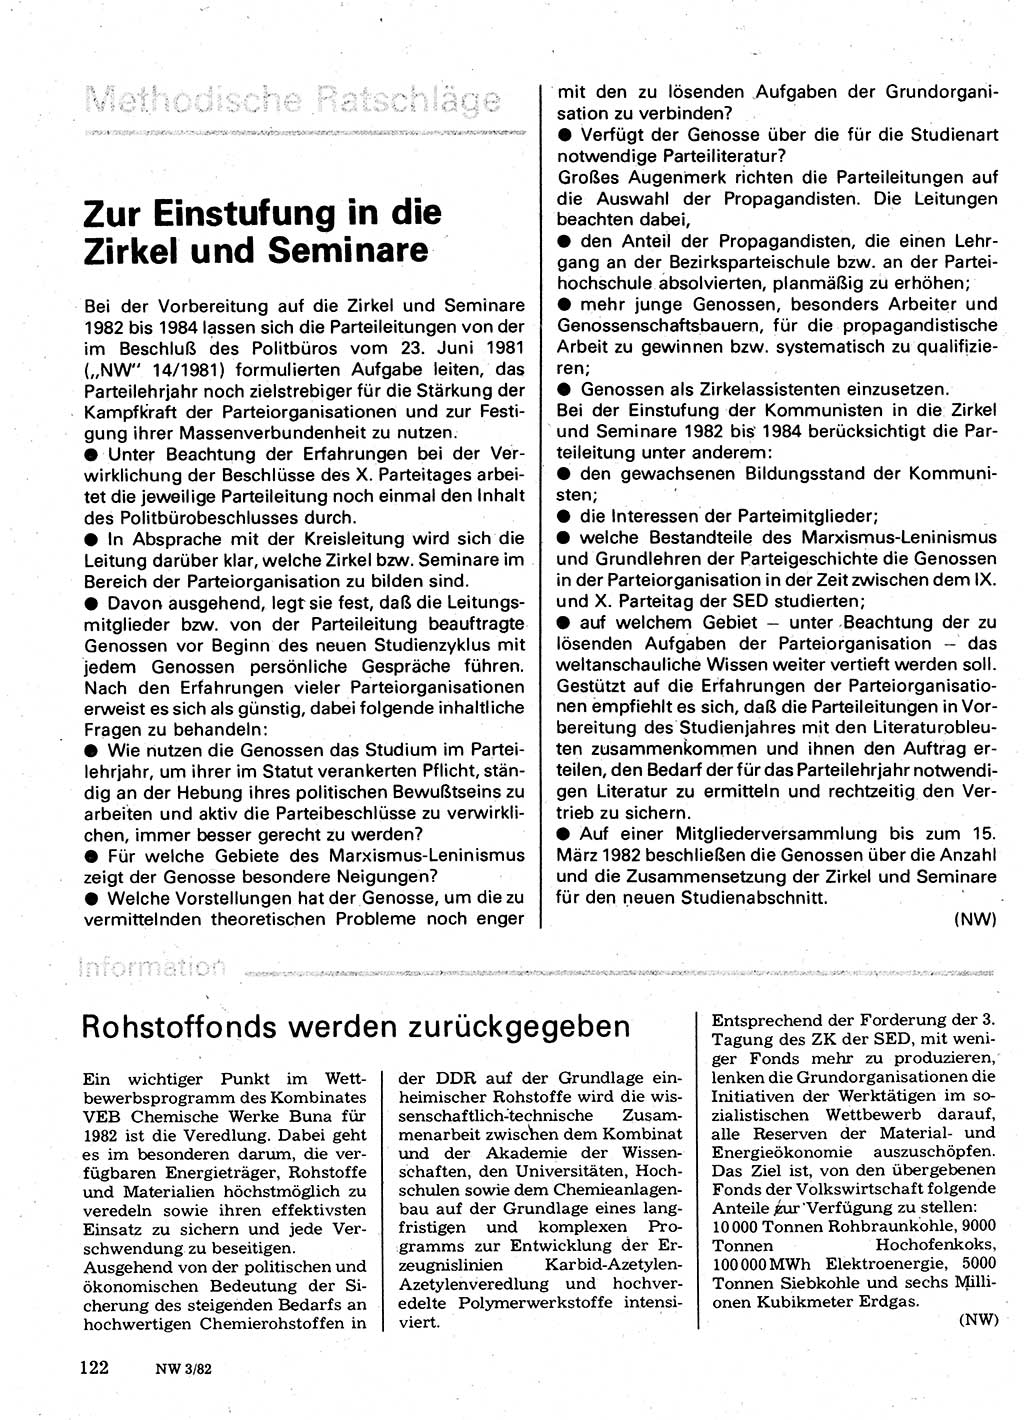 Neuer Weg (NW), Organ des Zentralkomitees (ZK) der SED (Sozialistische Einheitspartei Deutschlands) für Fragen des Parteilebens, 37. Jahrgang [Deutsche Demokratische Republik (DDR)] 1982, Seite 122 (NW ZK SED DDR 1982, S. 122)